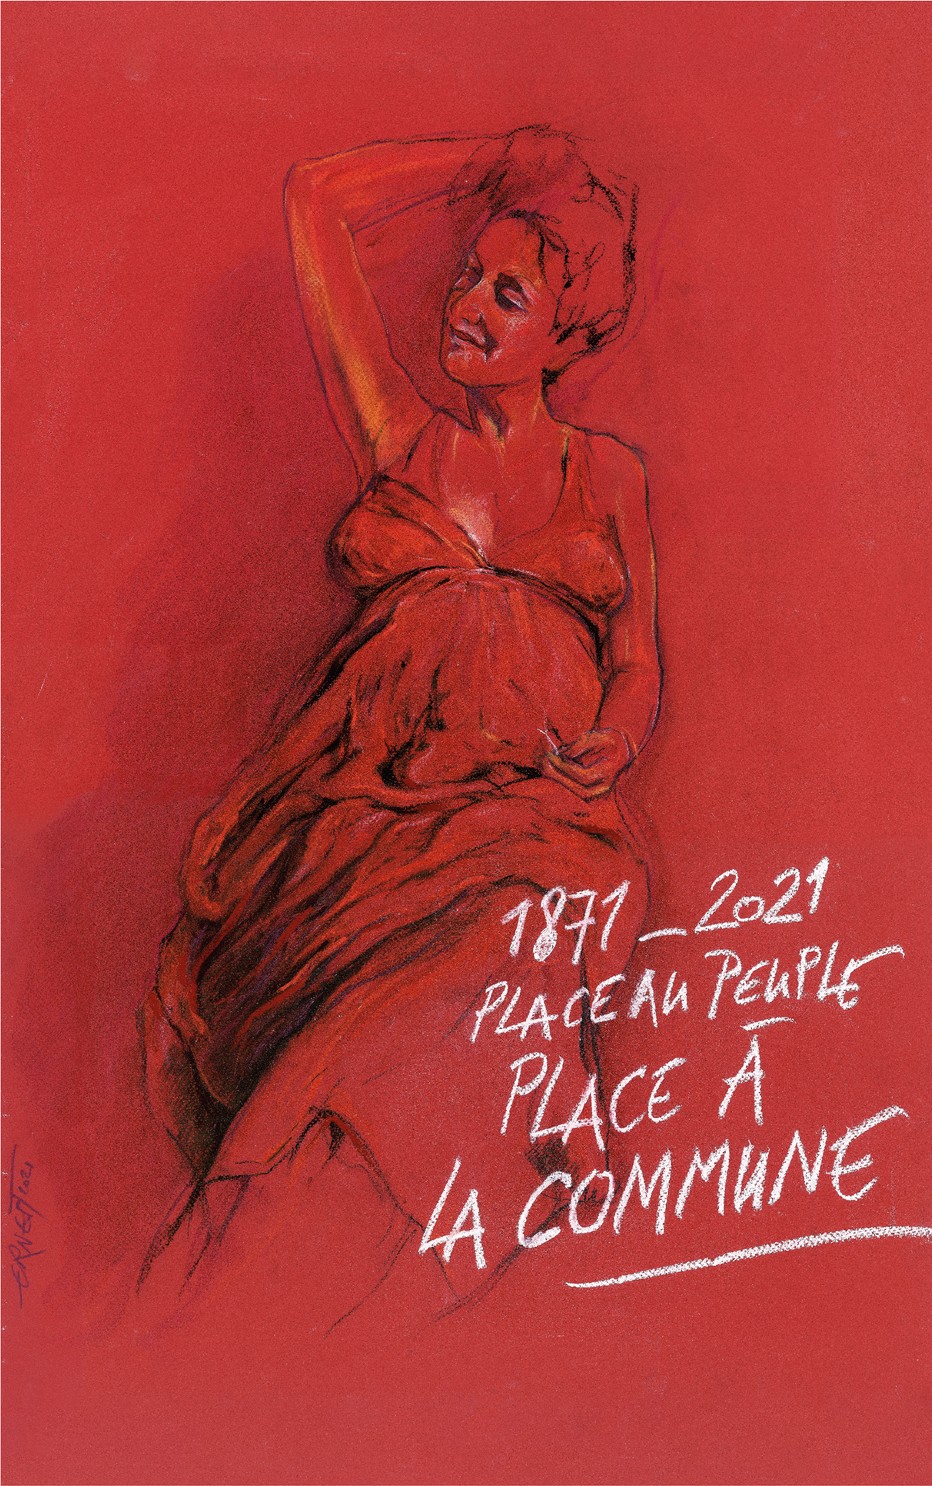 Affiche du 150ème anniversaire de la Commune de Paris 1871 signée de l'artiste plasticien Ernest Pignon-Ernest